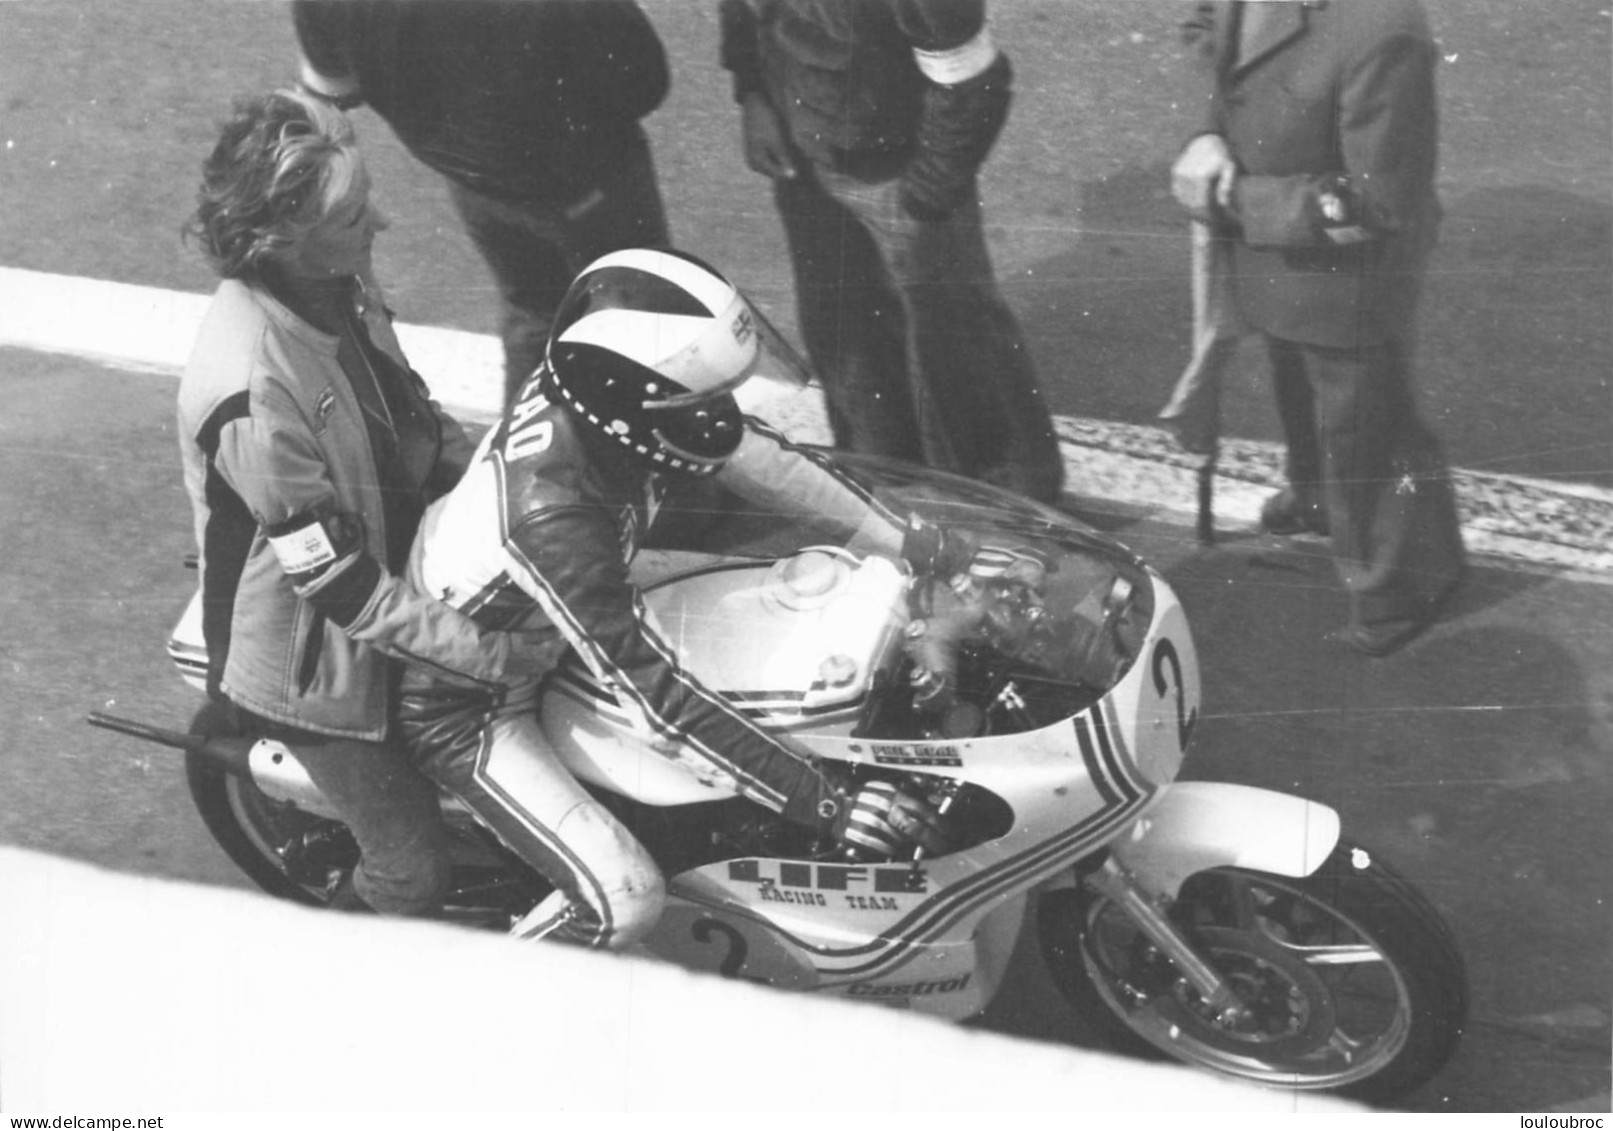 PILOTE PHIL READ GRAND PRIX DE FRANCE MOTO 1976 AU MANS  PHOTO DE PRESSE  17X12CM - Sports